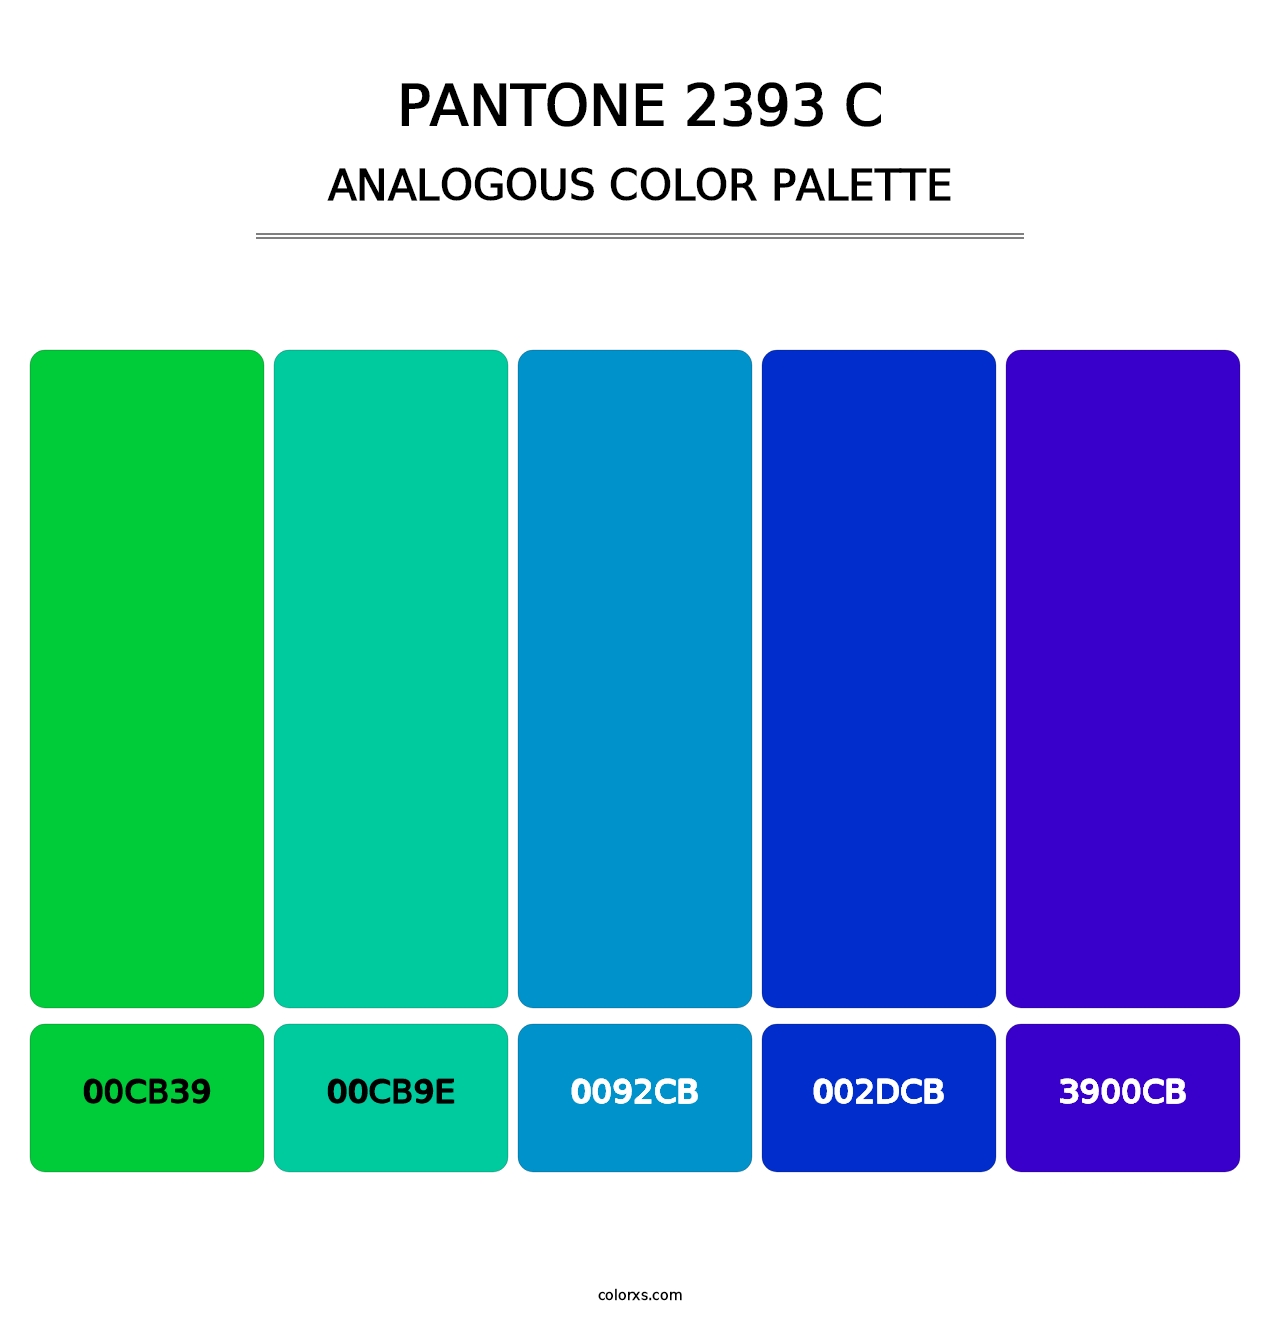 PANTONE 2393 C - Analogous Color Palette